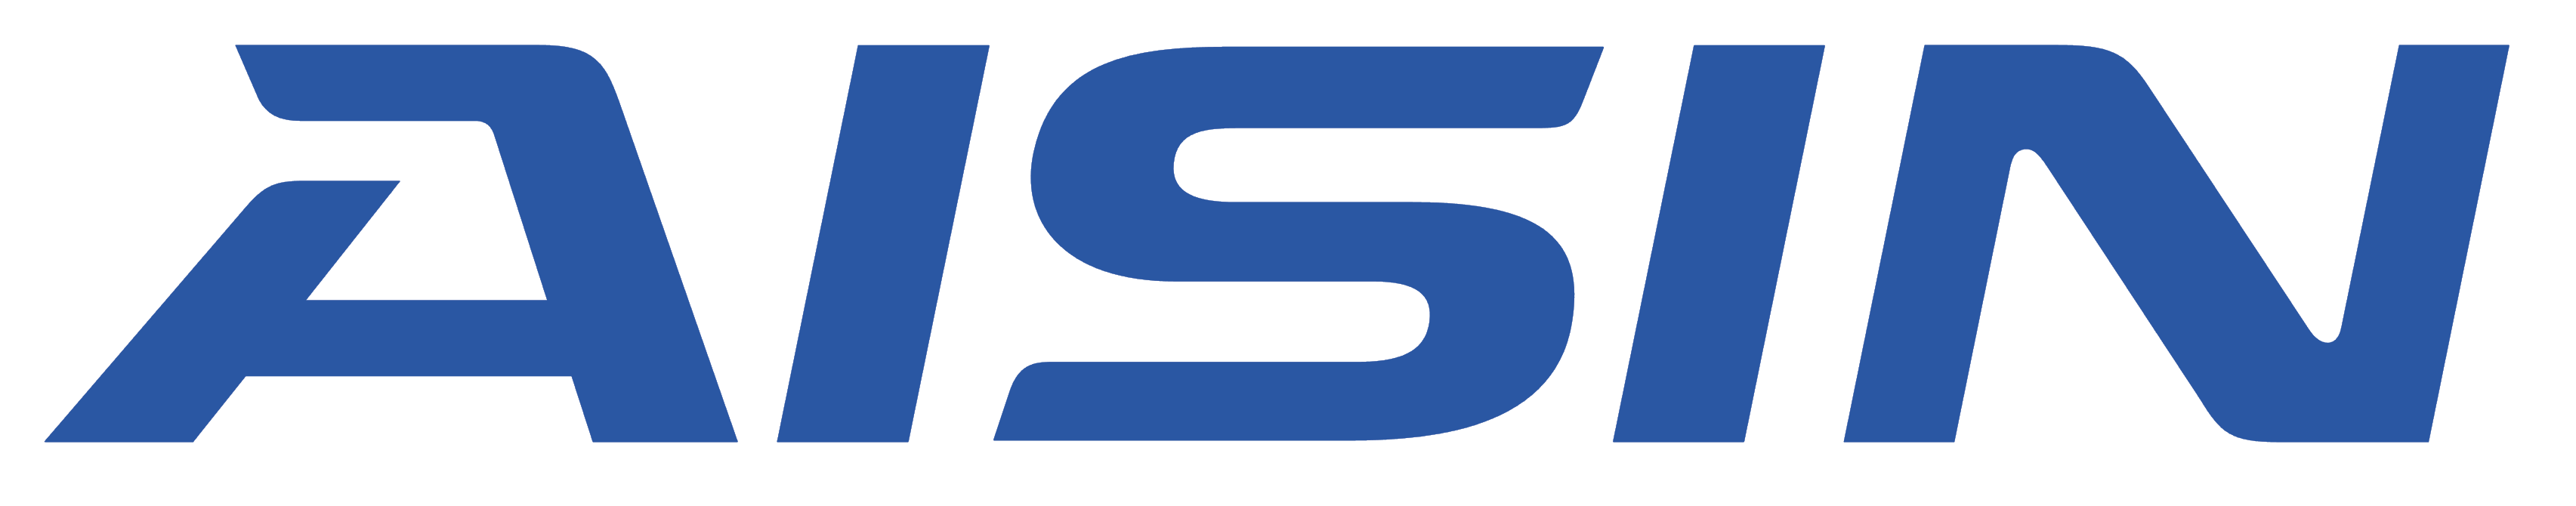 Aisin Seiki Logos Download